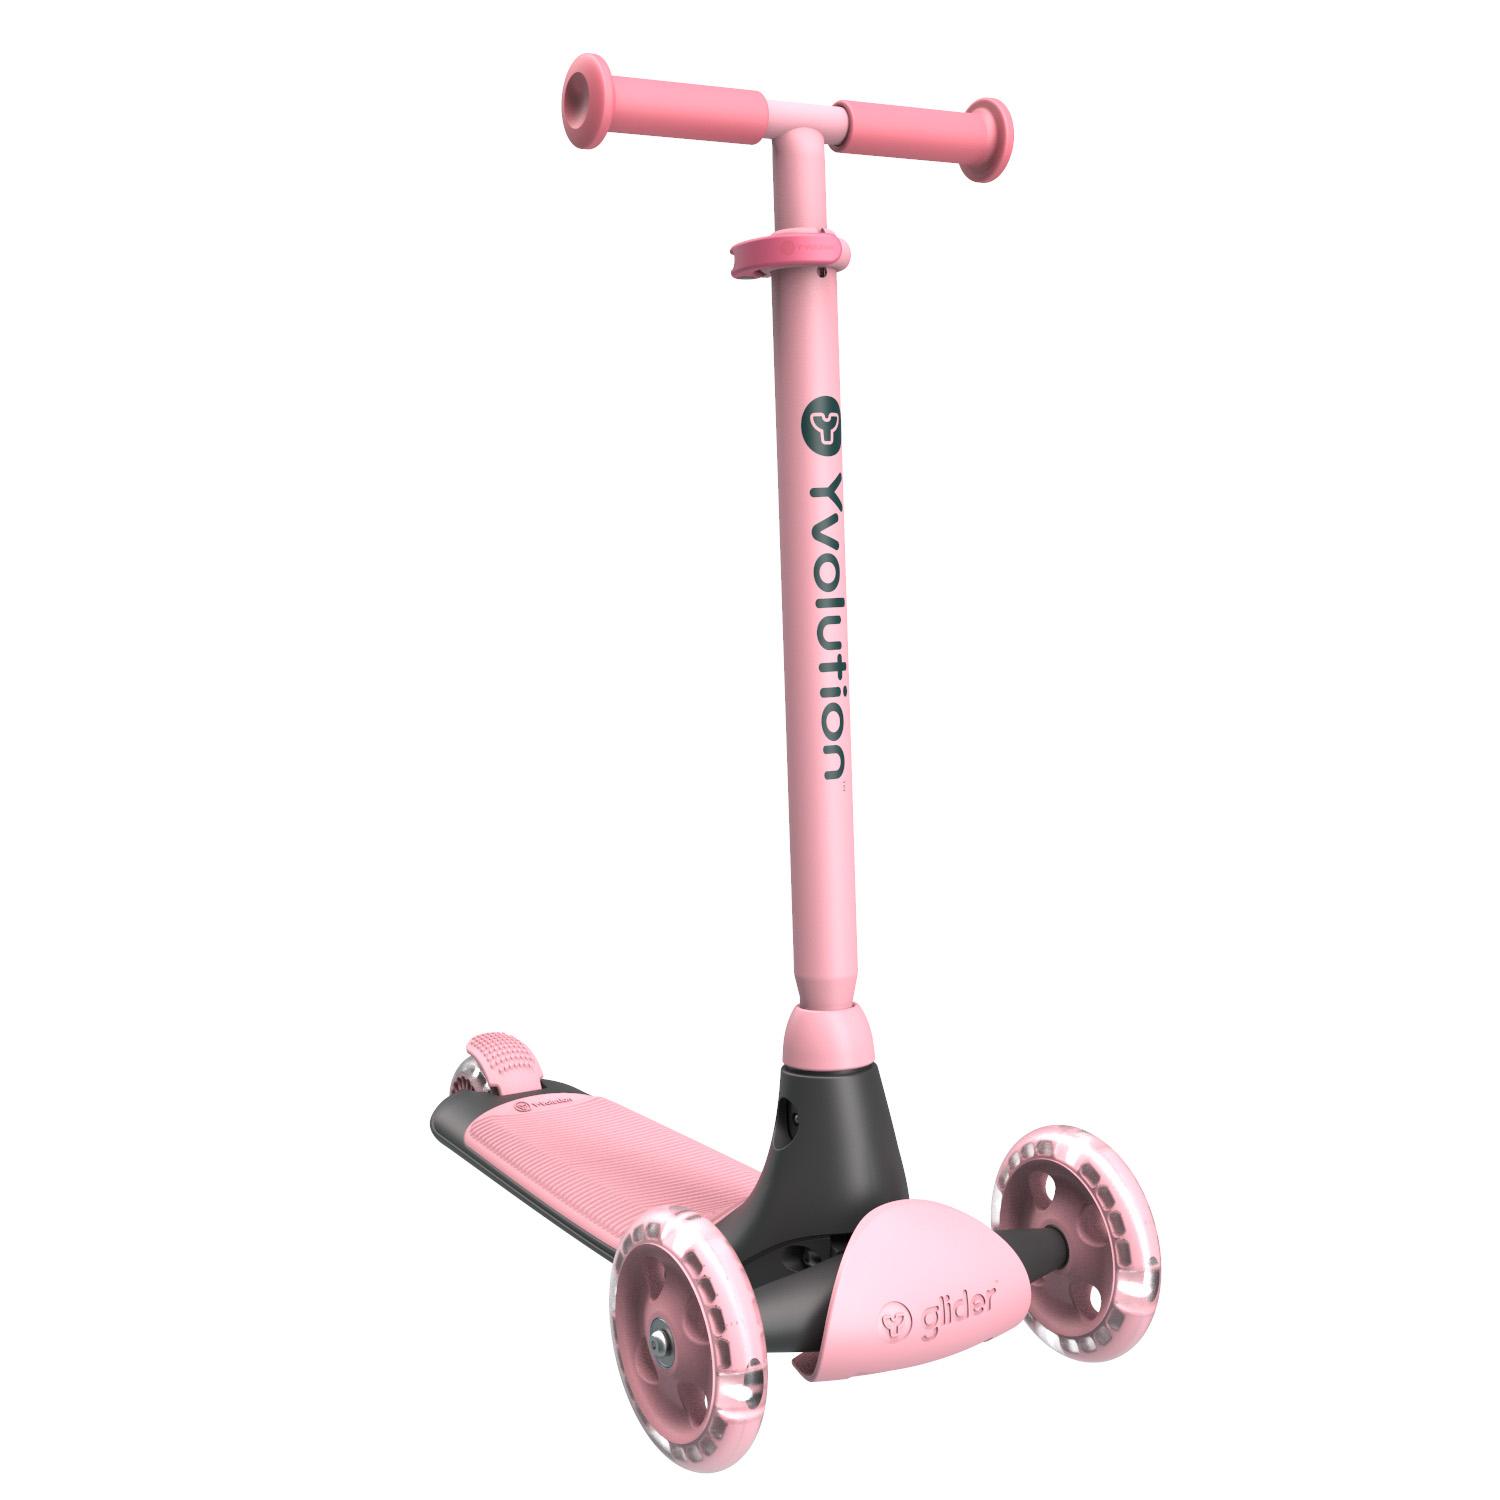 Y Glider Kiwi Kids Scooter - Pink